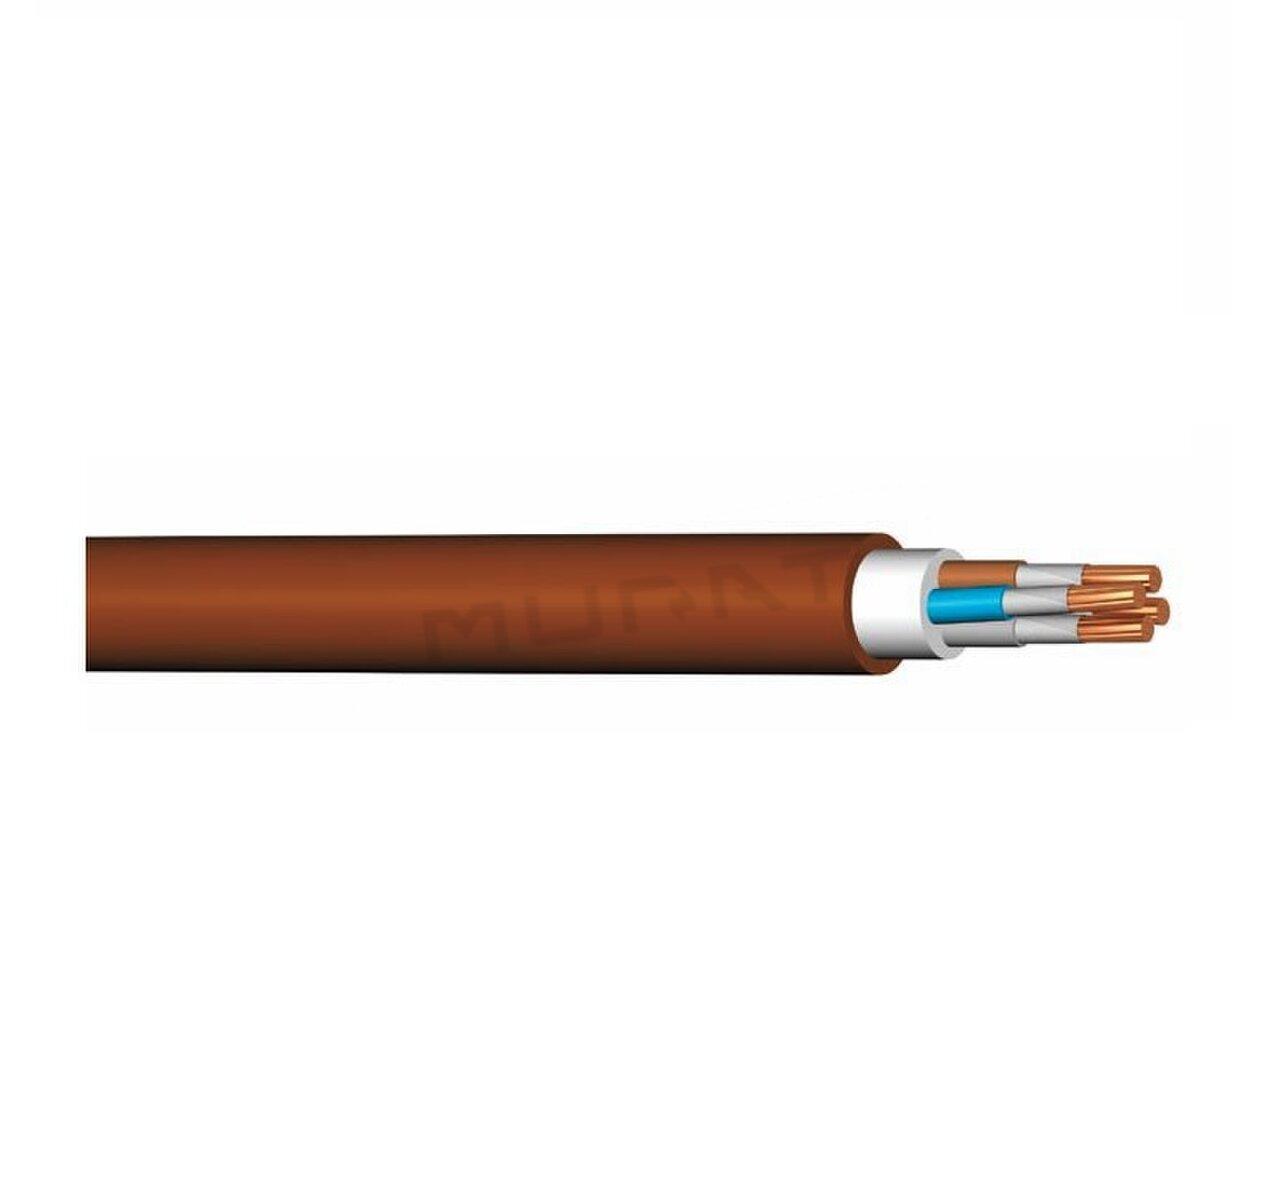 Kábel PRAFlaDur +90 -J 12x1,5 mm2 P90-R B2ca s1d1a1 silový